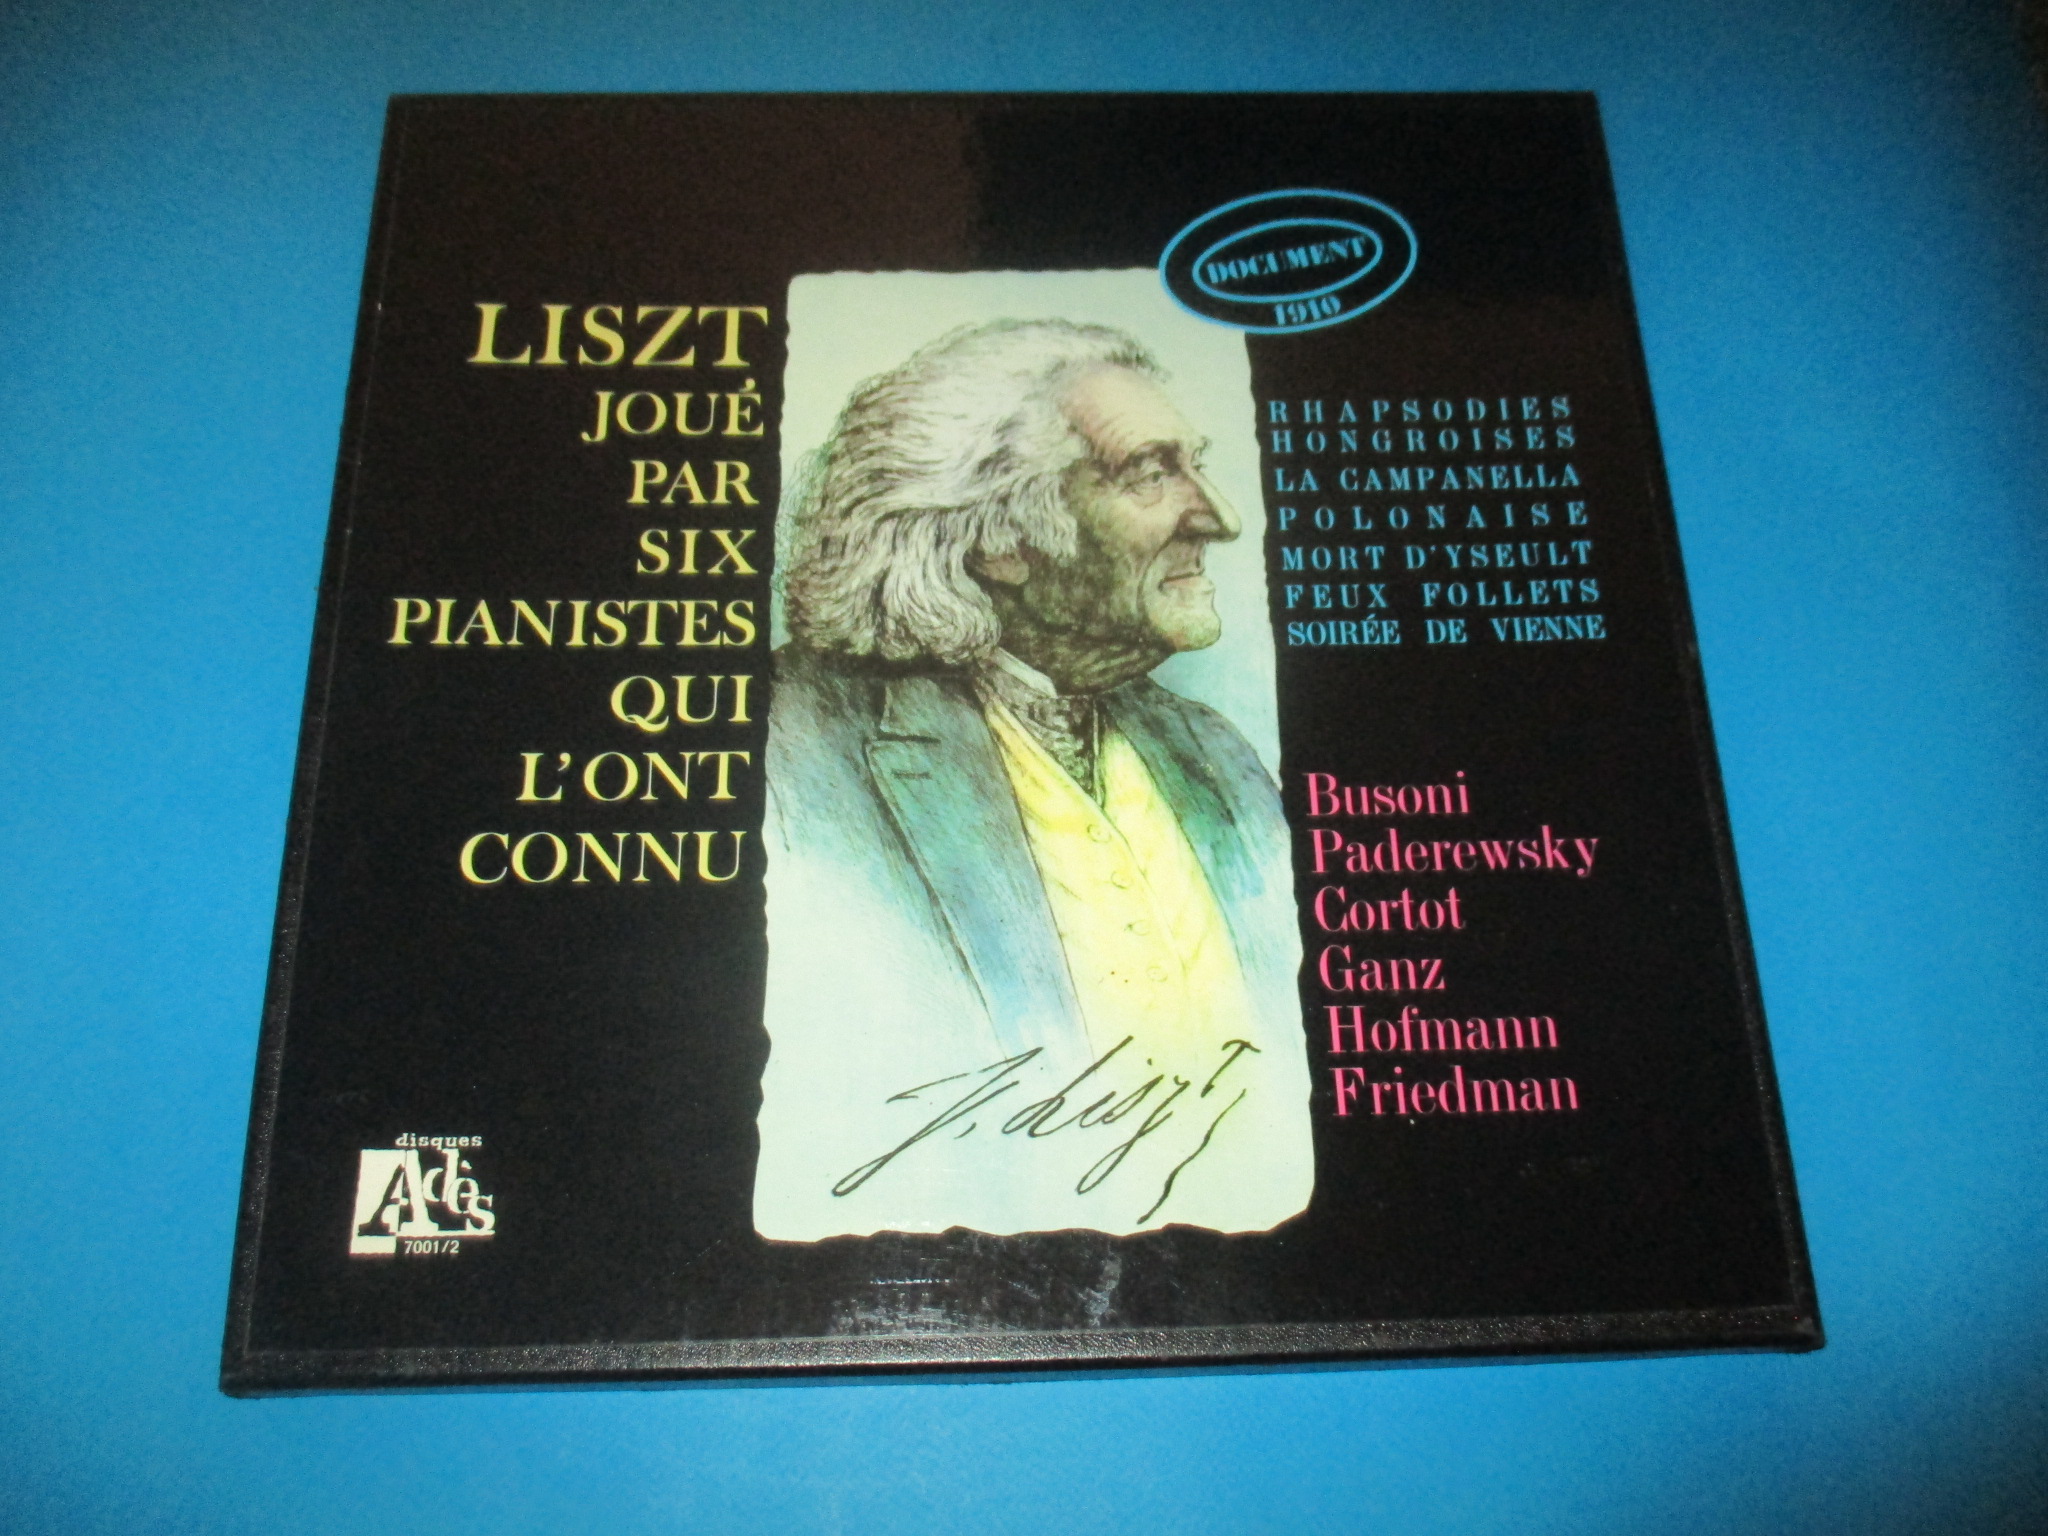 Coffret 2 disques Liszt joué par six pianistes qui l\'ont connu, Rhapsodies Hongroises La Campanella Polonaise Mort d\'Yseult Feux Follets Soirée de Vienne, Adès